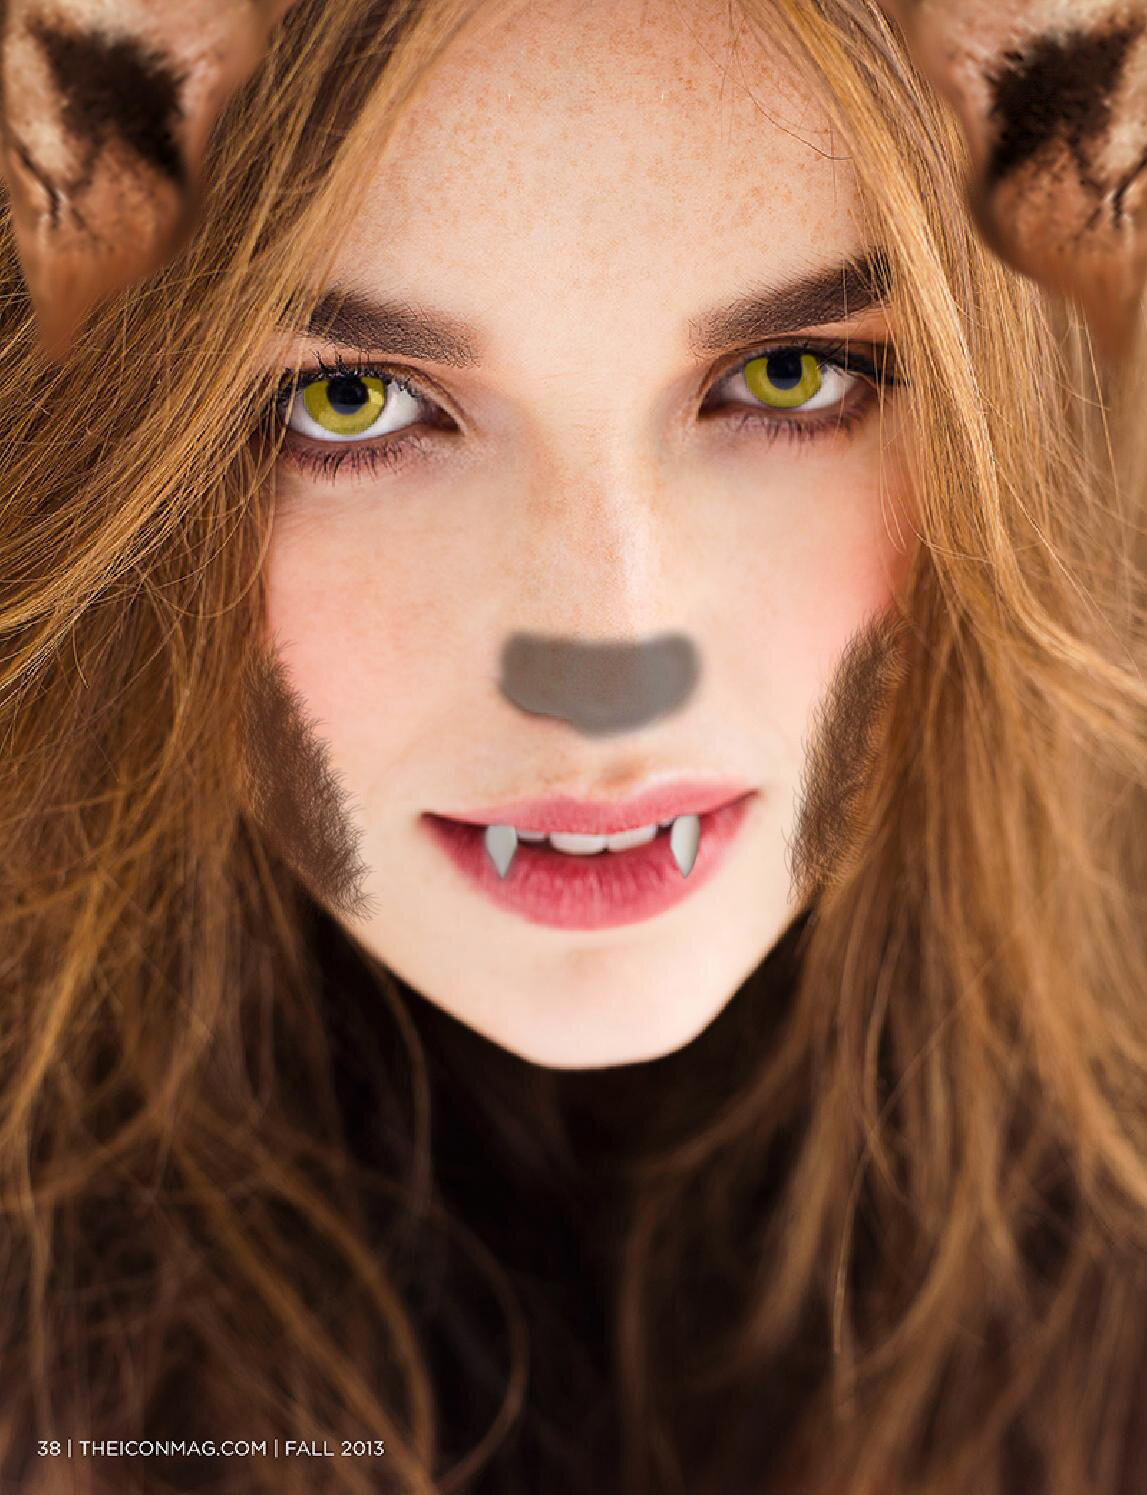 Elizabeth Henstridge Werewolf by Mendgarner on DeviantArt